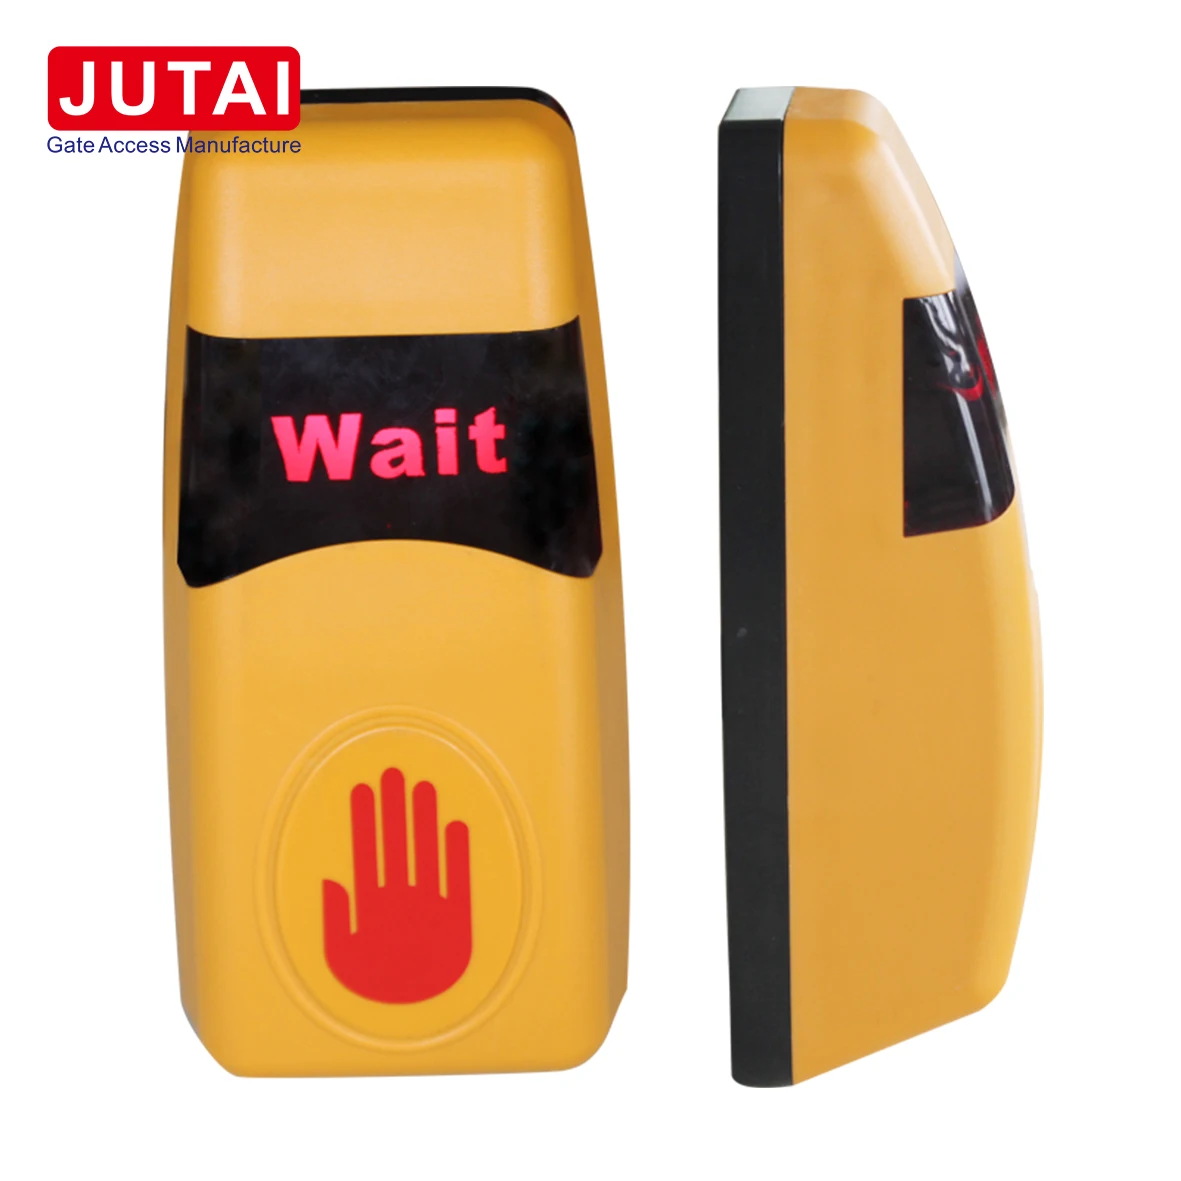 JUTAI JT-THE باب مستشعر الأشعة تحت الحمراء زر بدون لمس لنظام التحكم في الوصول ونظام الوصول إلى البوابة